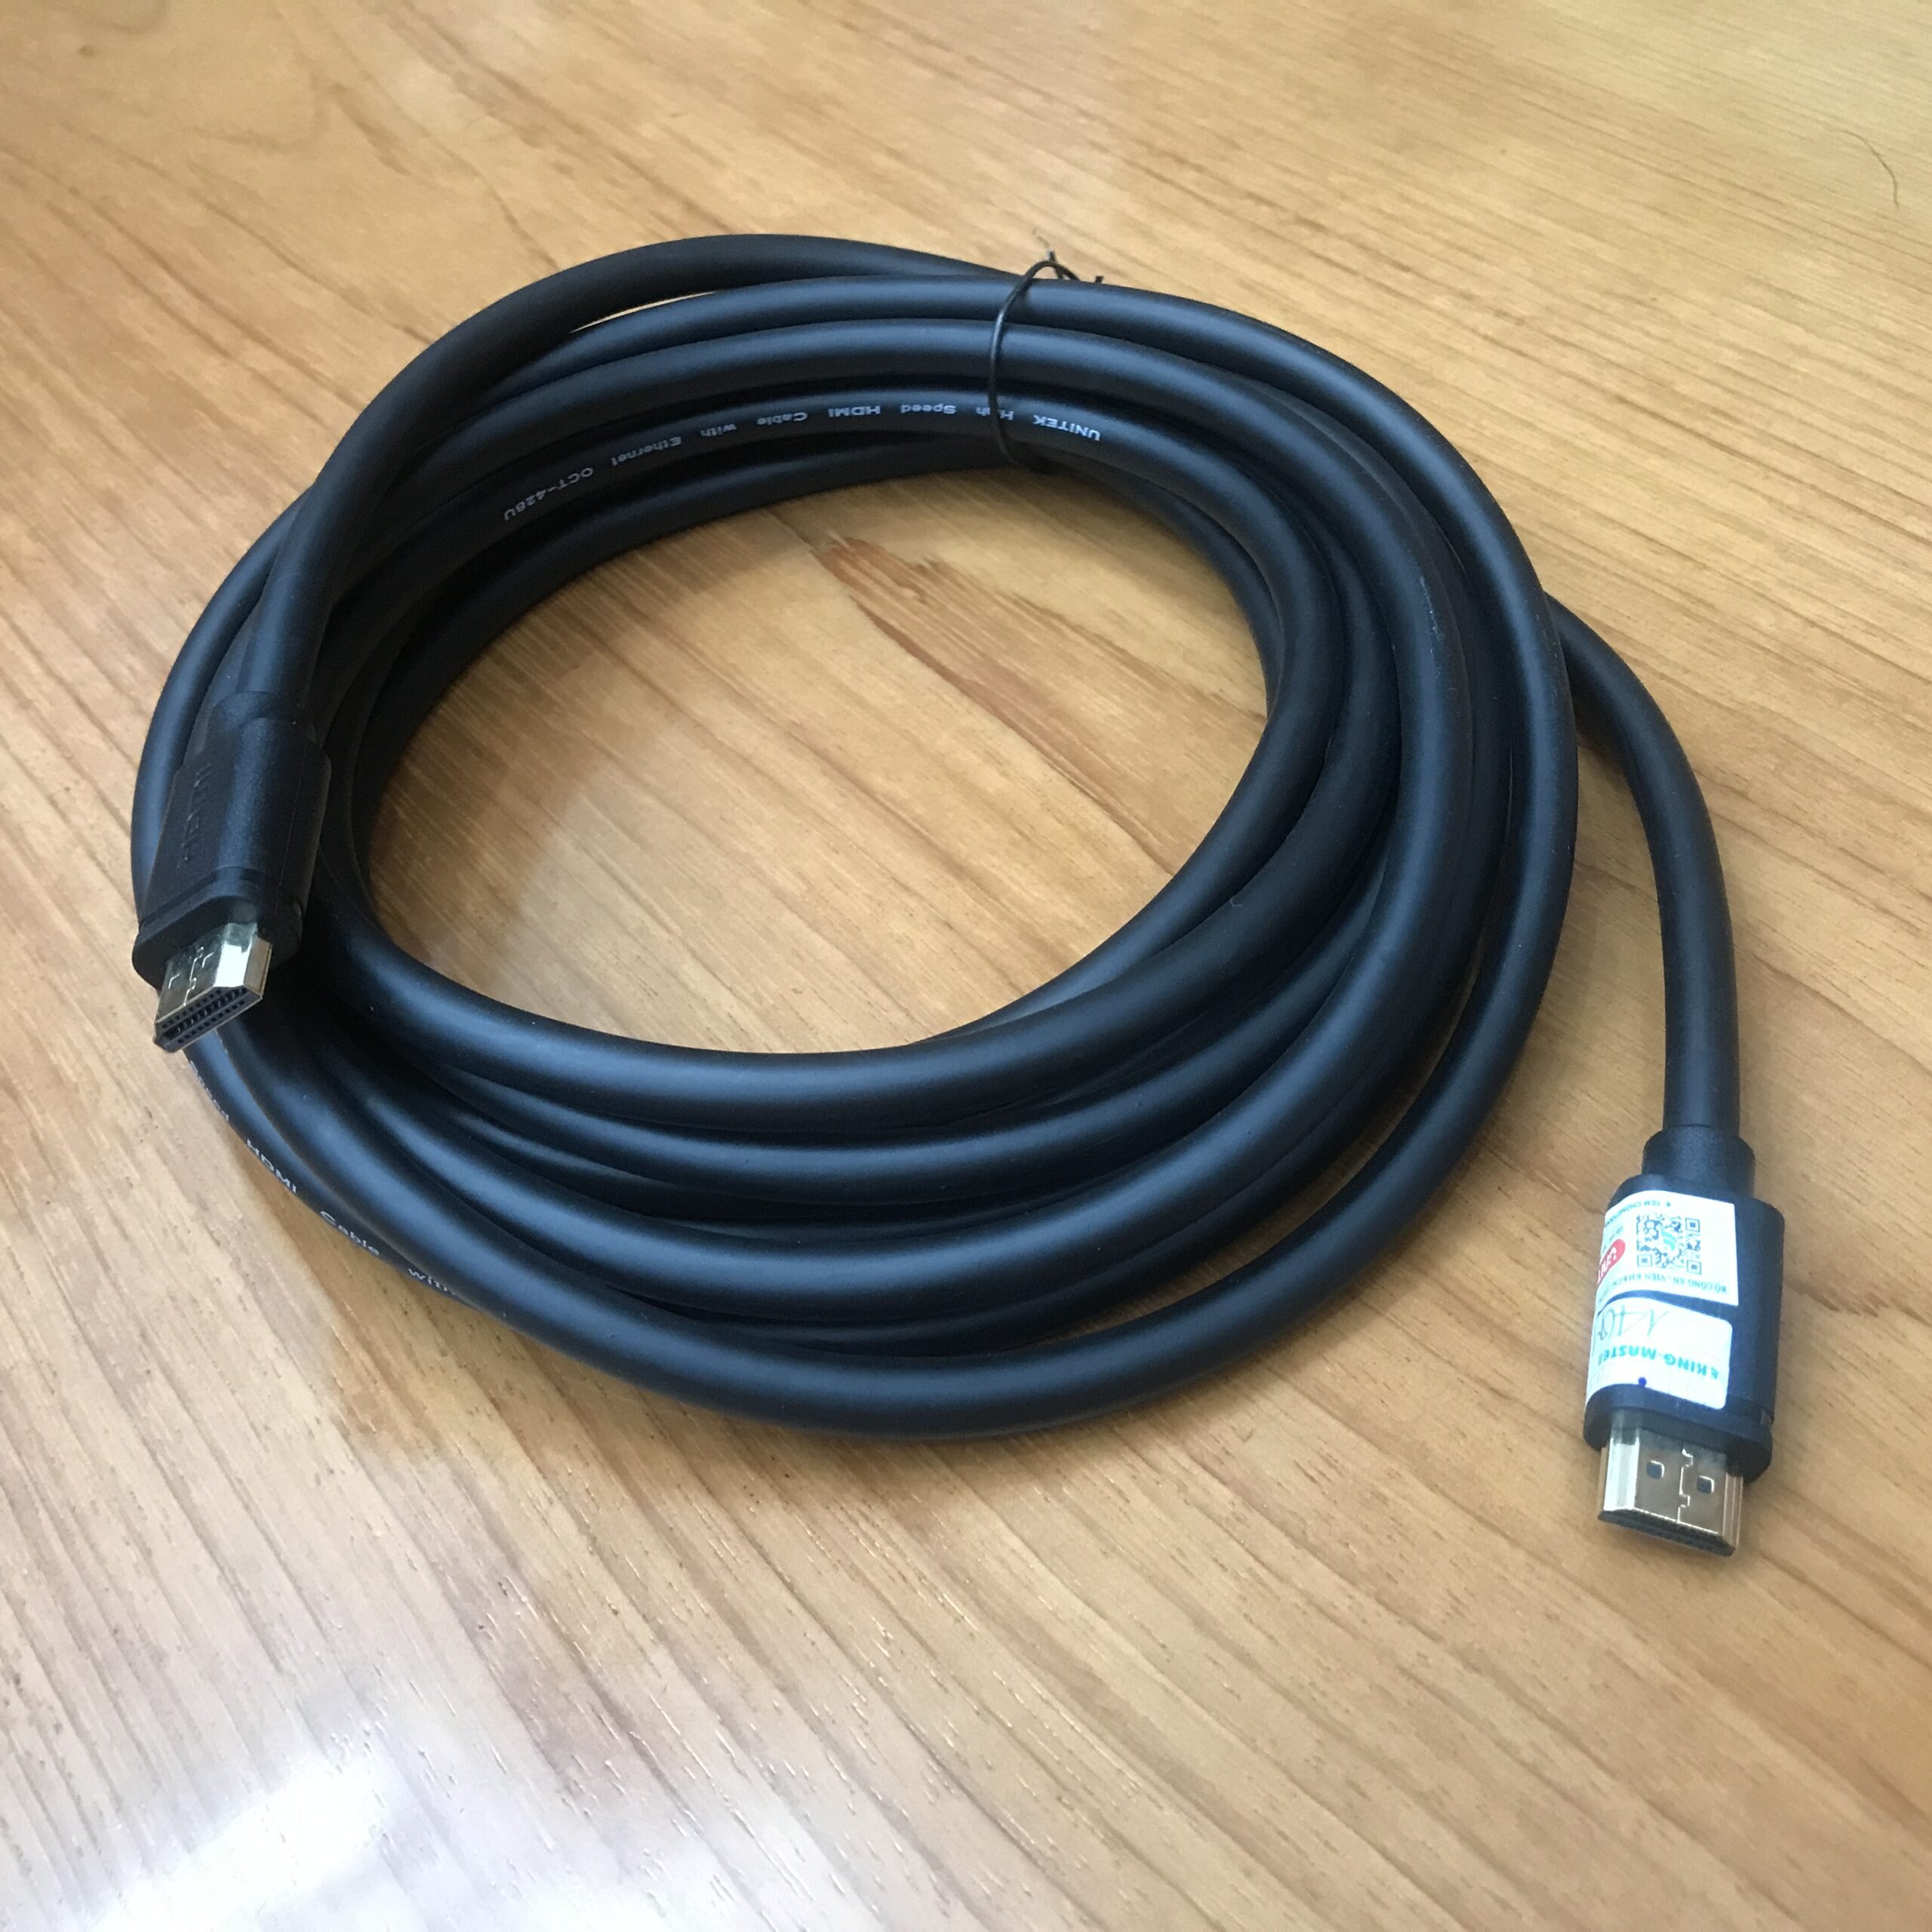 Cáp nối HDMI Unitek chuẩn 1.4 hỗ trợ HD chuẩn 4K chiểu dài 5m